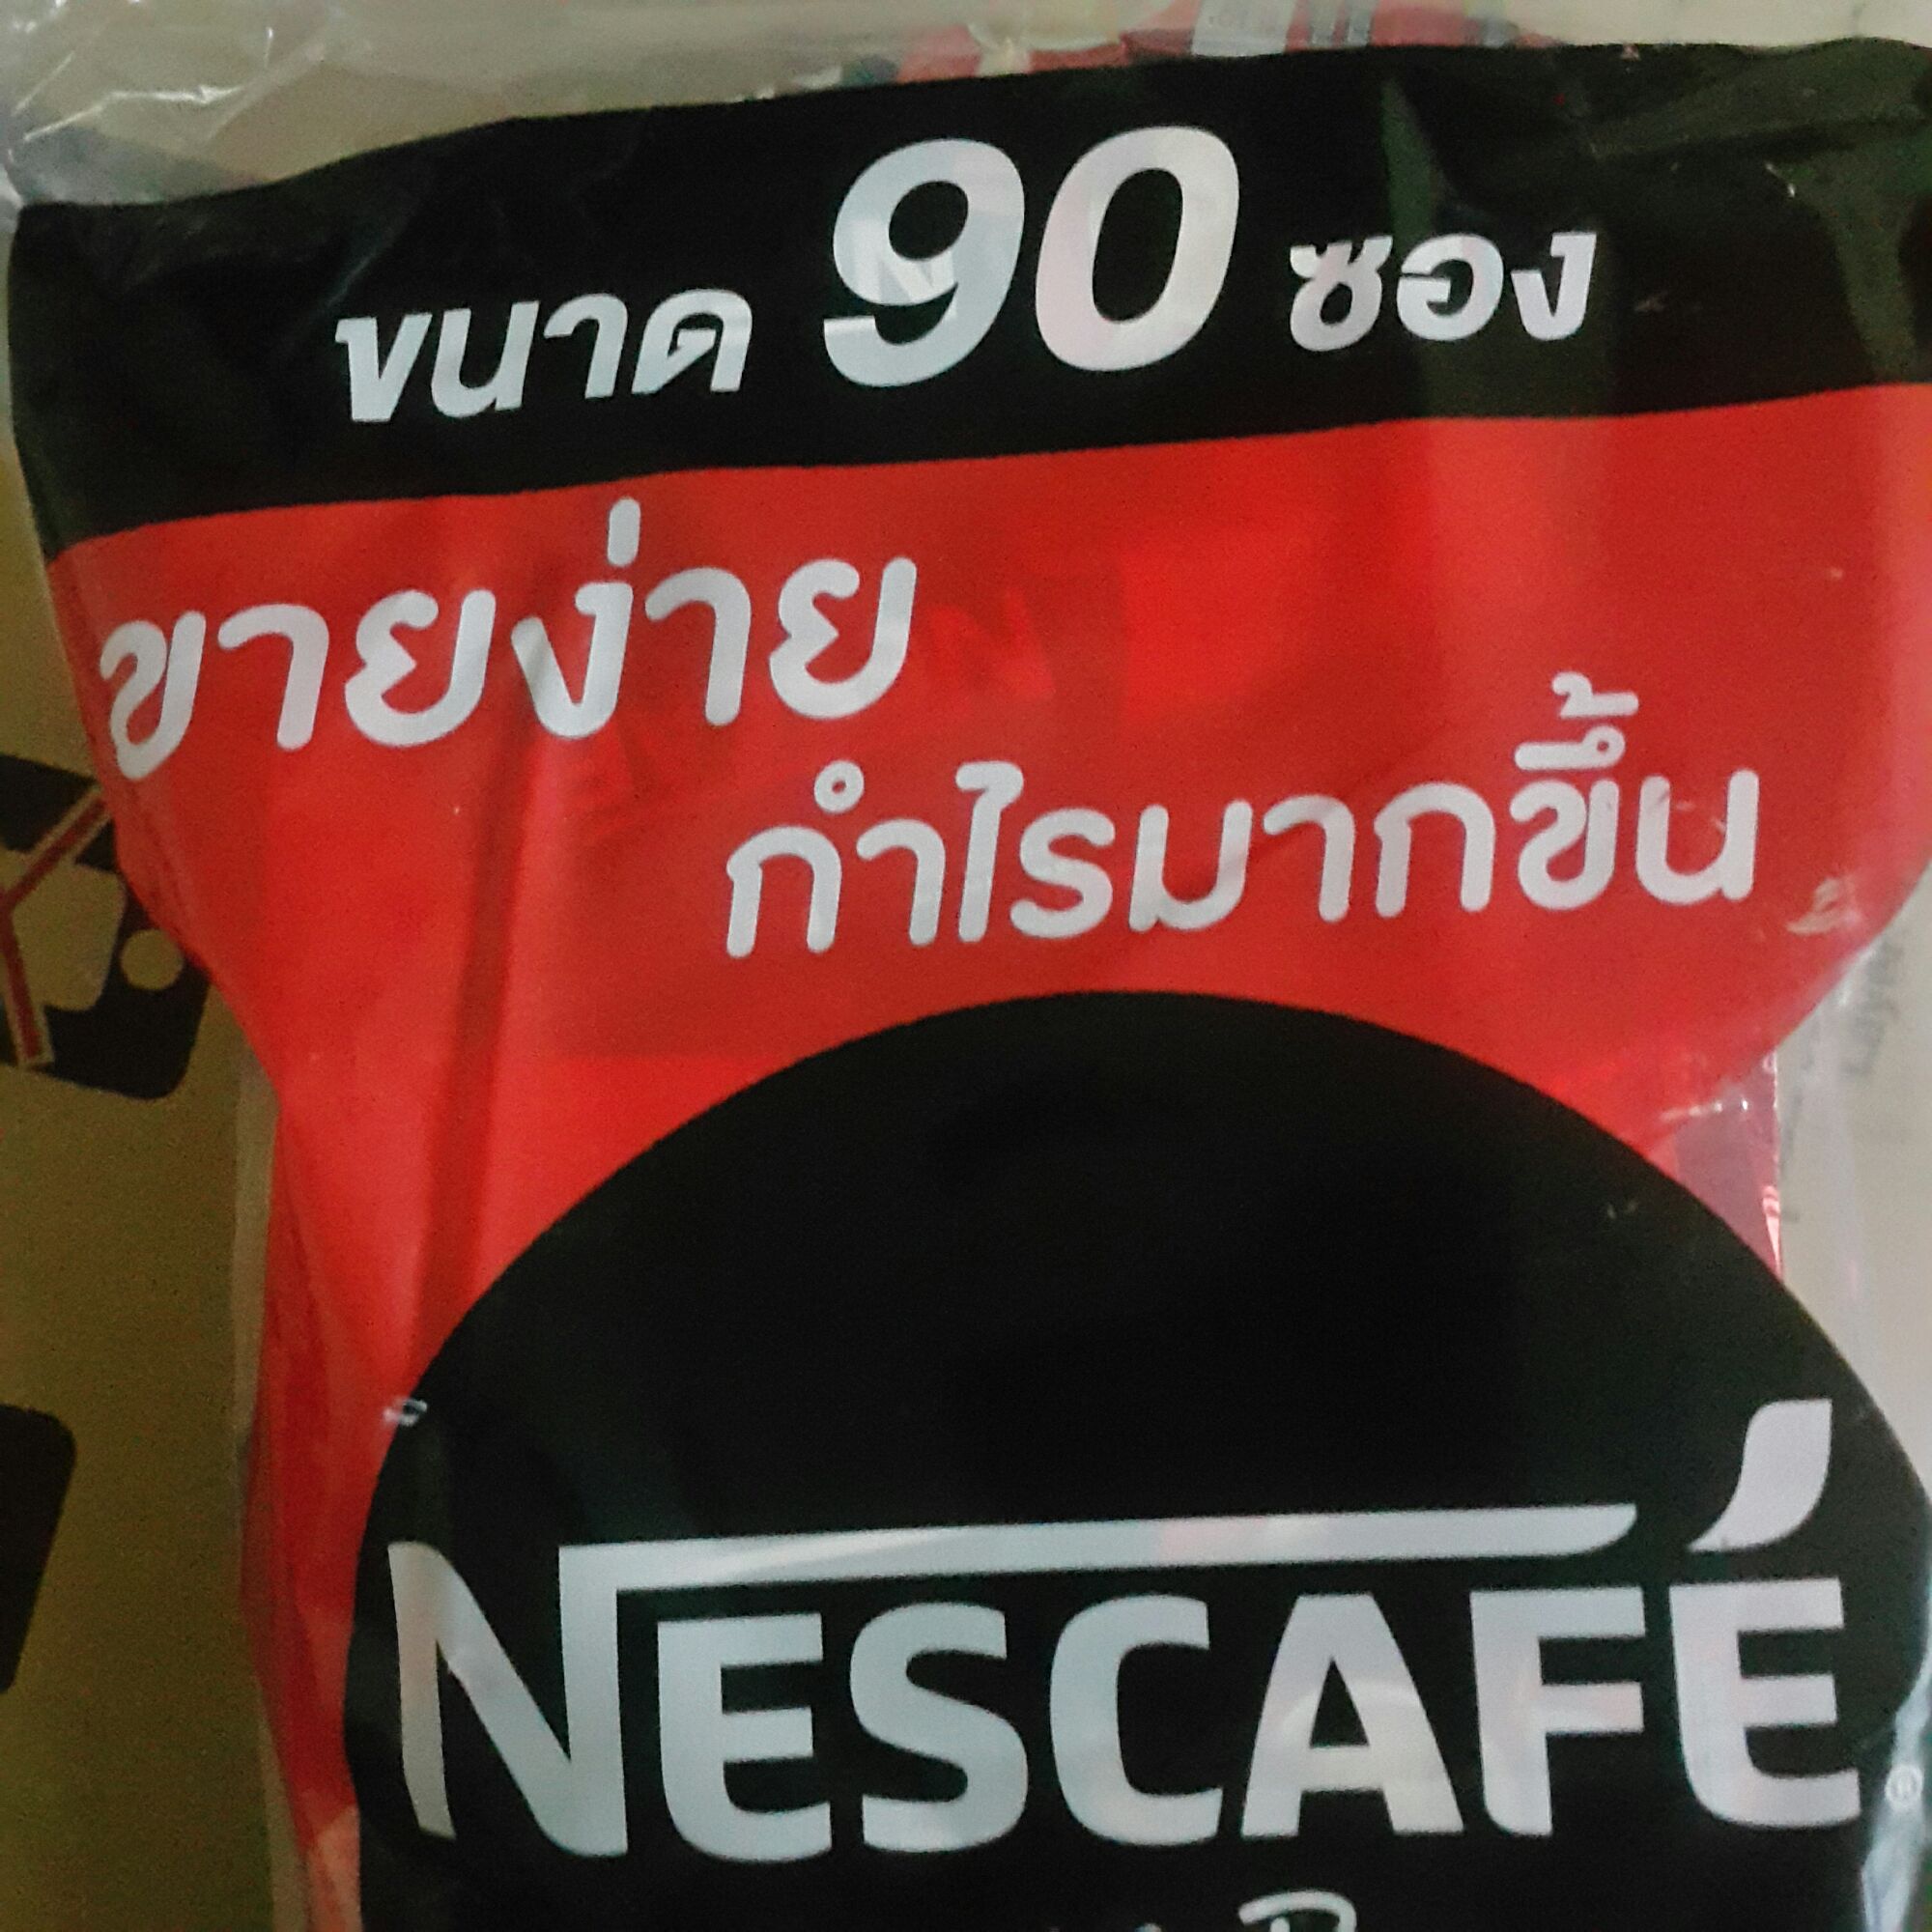 เนสกาแฟ กาแฟปรุงสำเร็จชนิดผง 3 in1 90ซอง ริชอโรมา(แดง)กาแฟแท้ๆ คั่วบดละเอียด 90ซอง